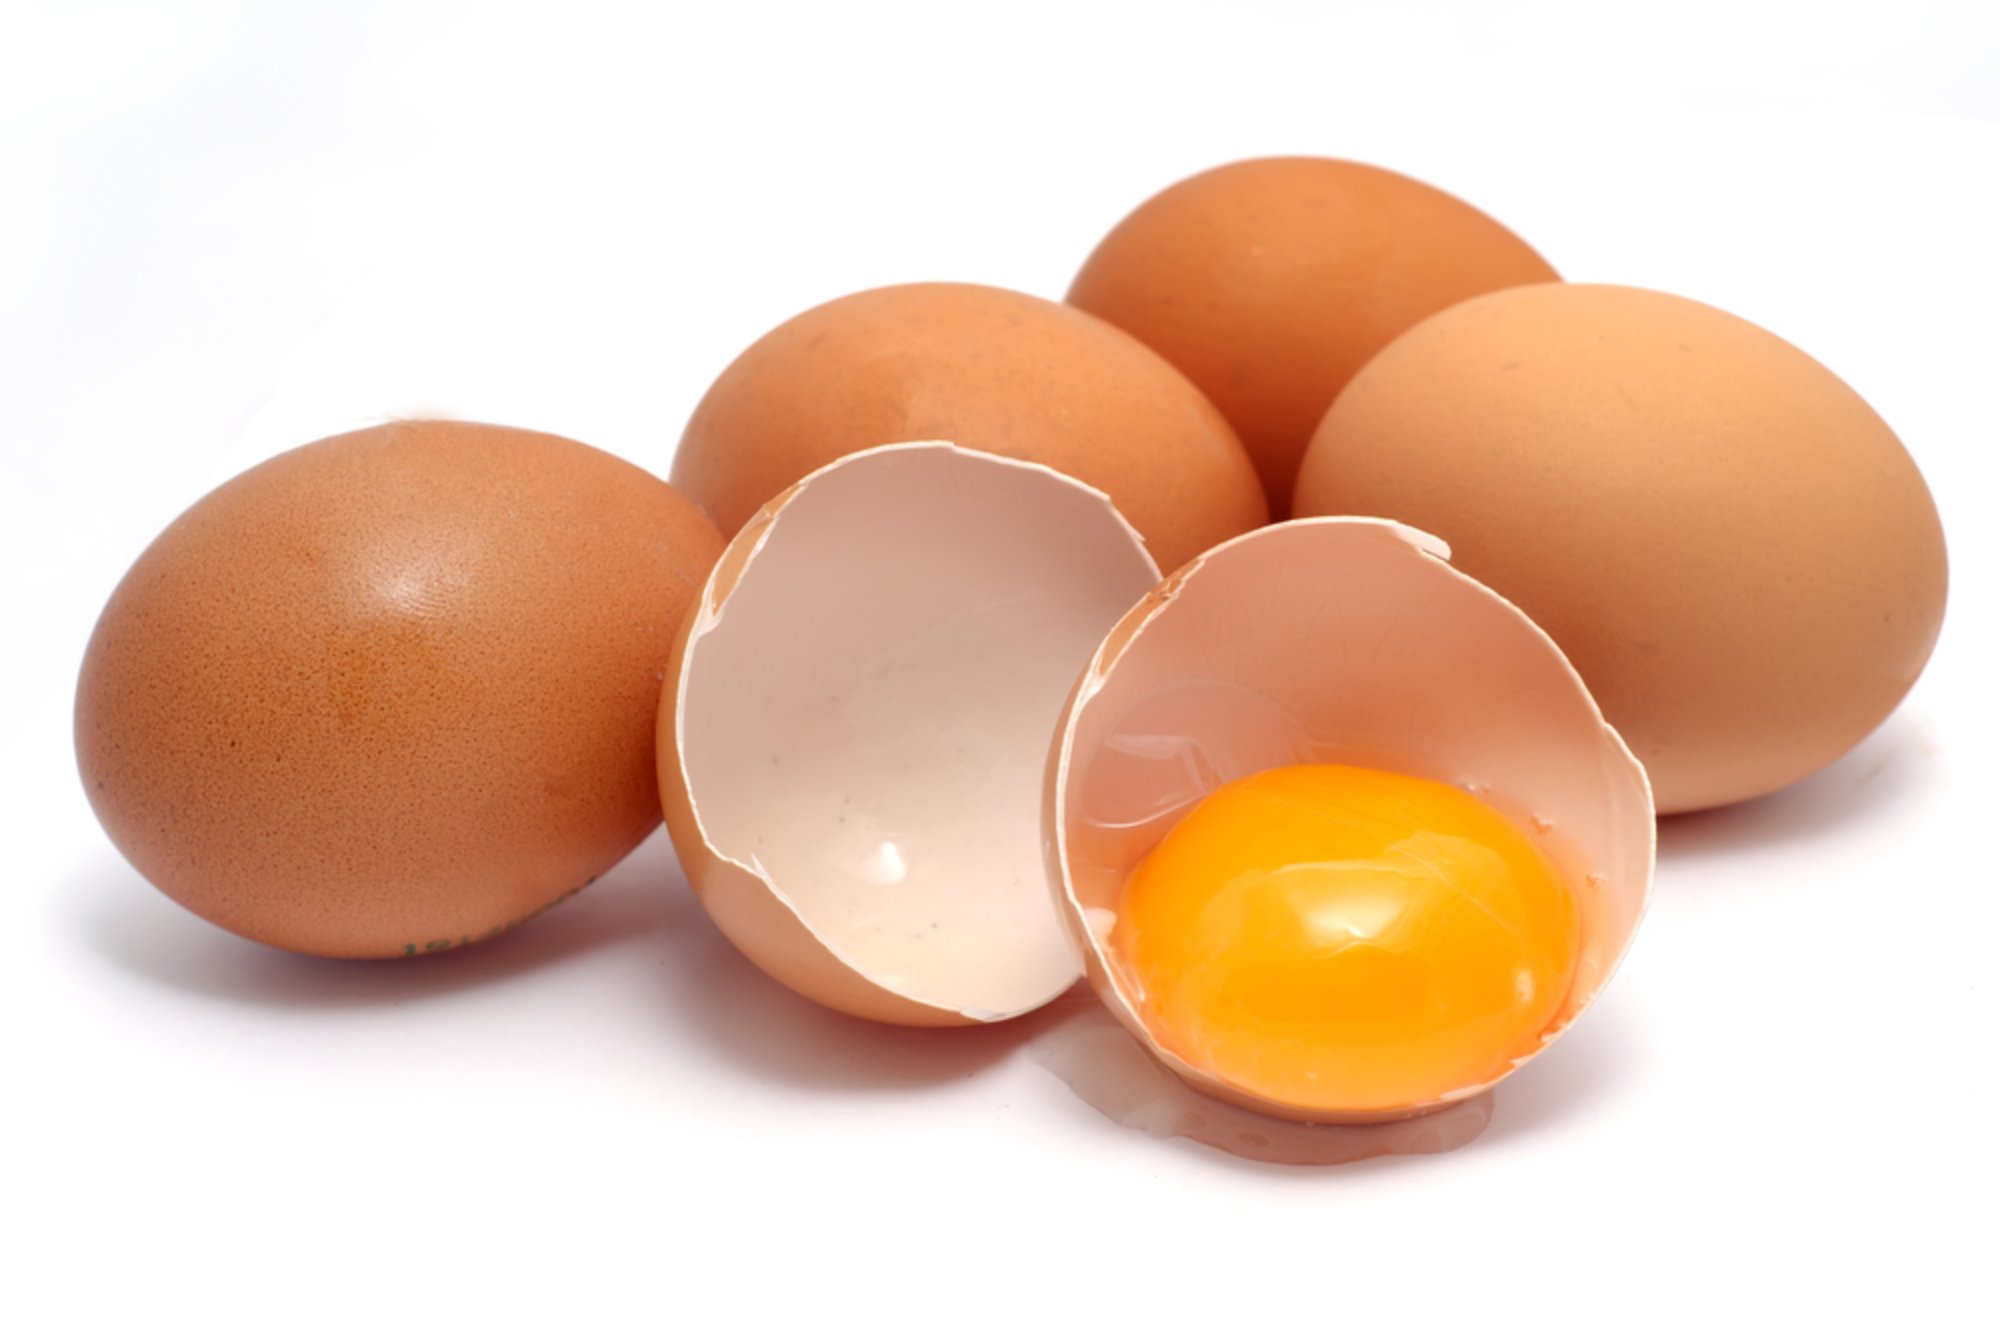   Trứng rất giàu protein, tốt cho phụ nữ tuổi 50  